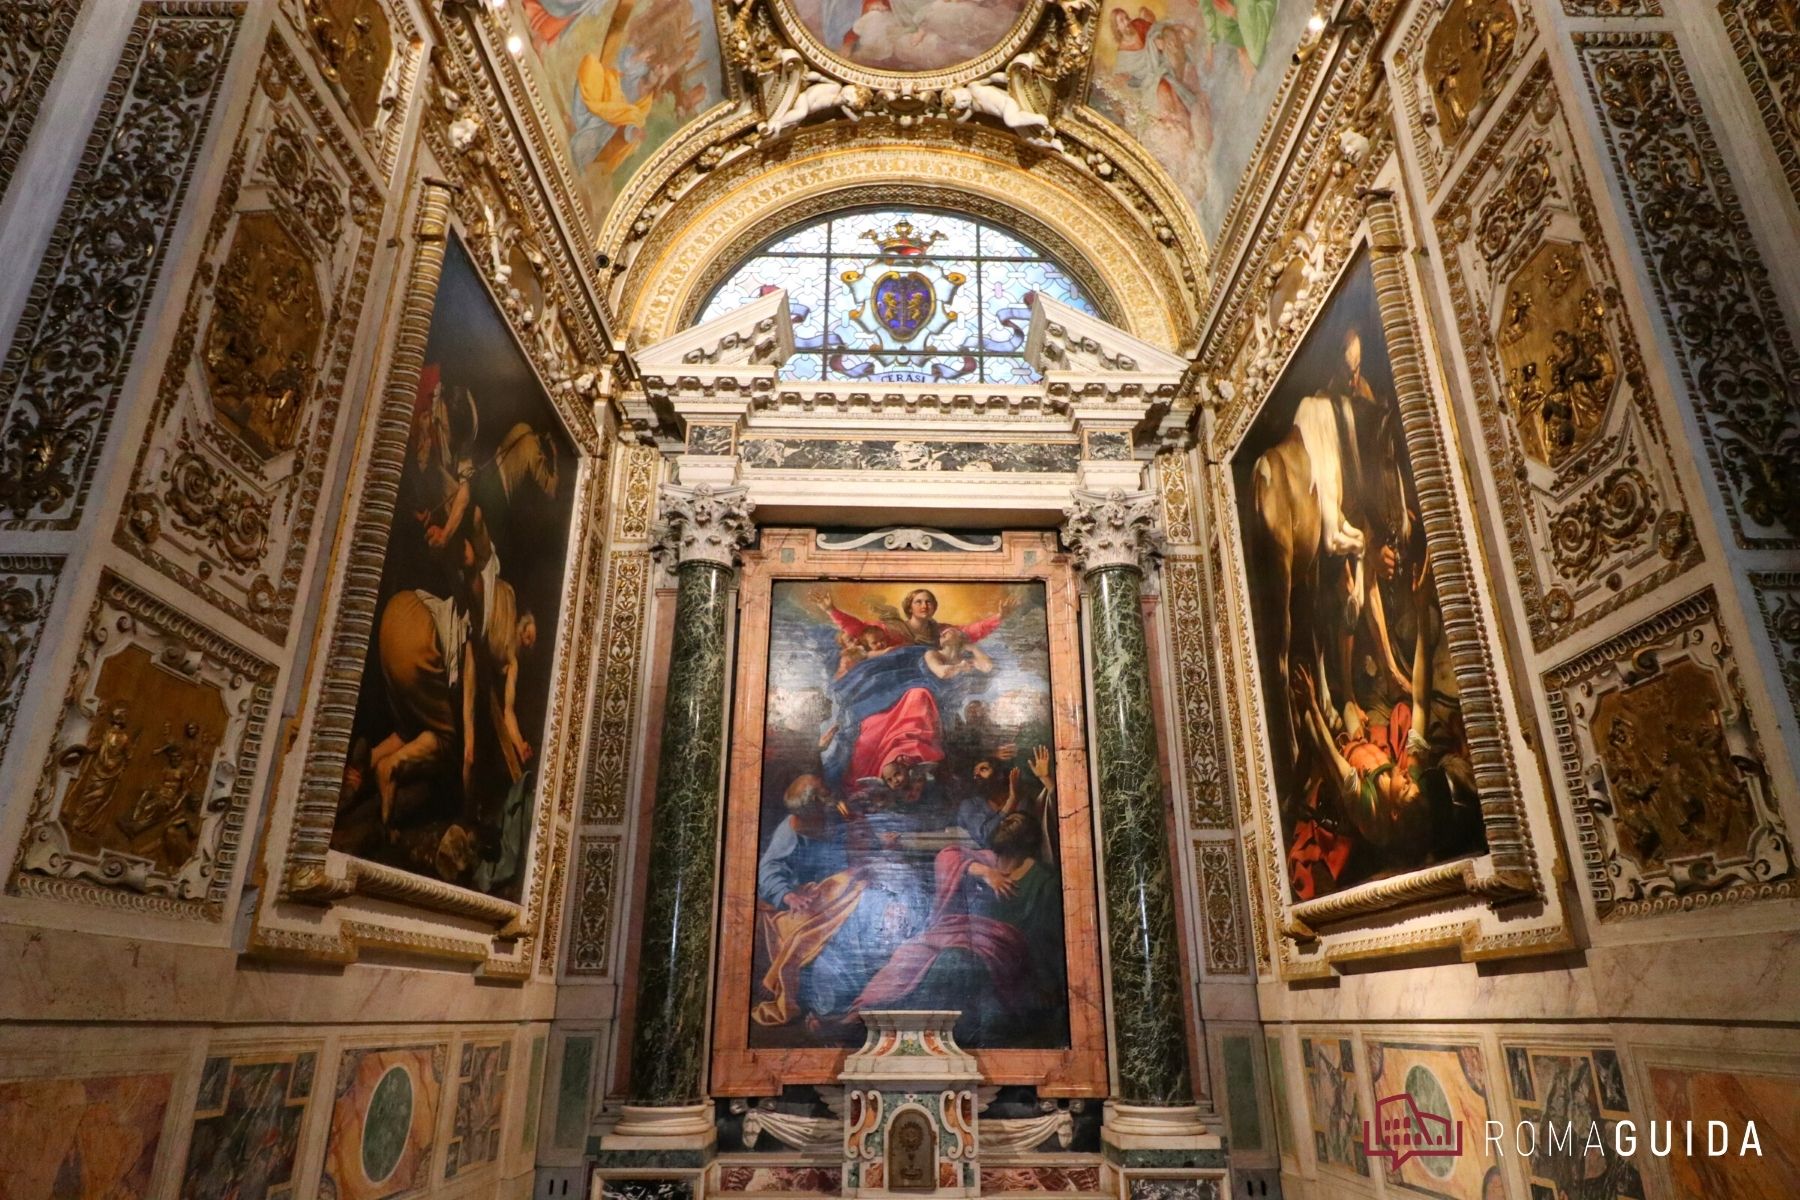 Santa Maria del Popolo